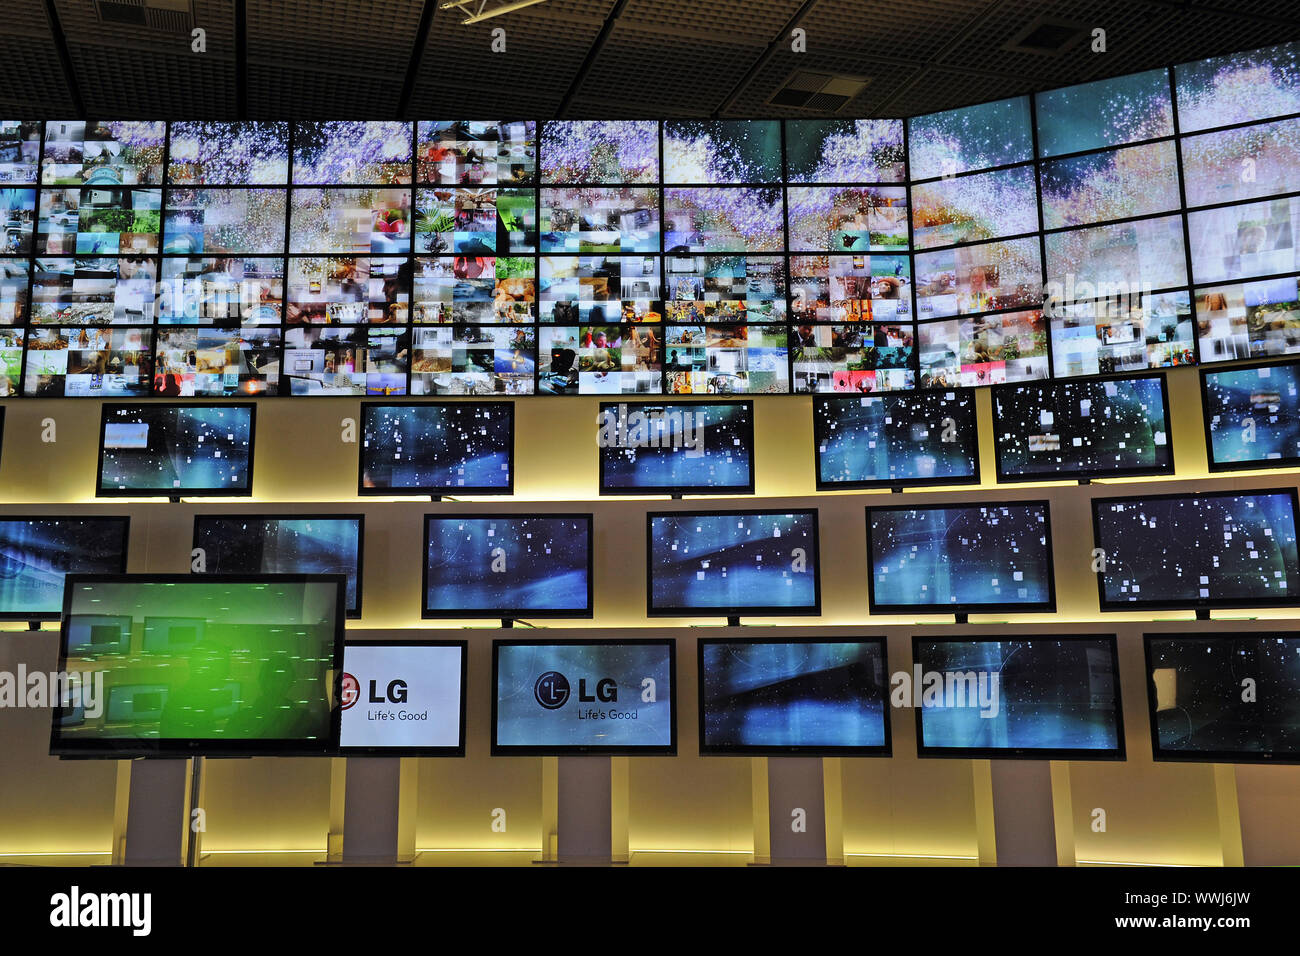 Les écrans de télévision de la société LG sur l'exposition internationale de l'électronique grand public IFA 2009 à Berlin Banque D'Images